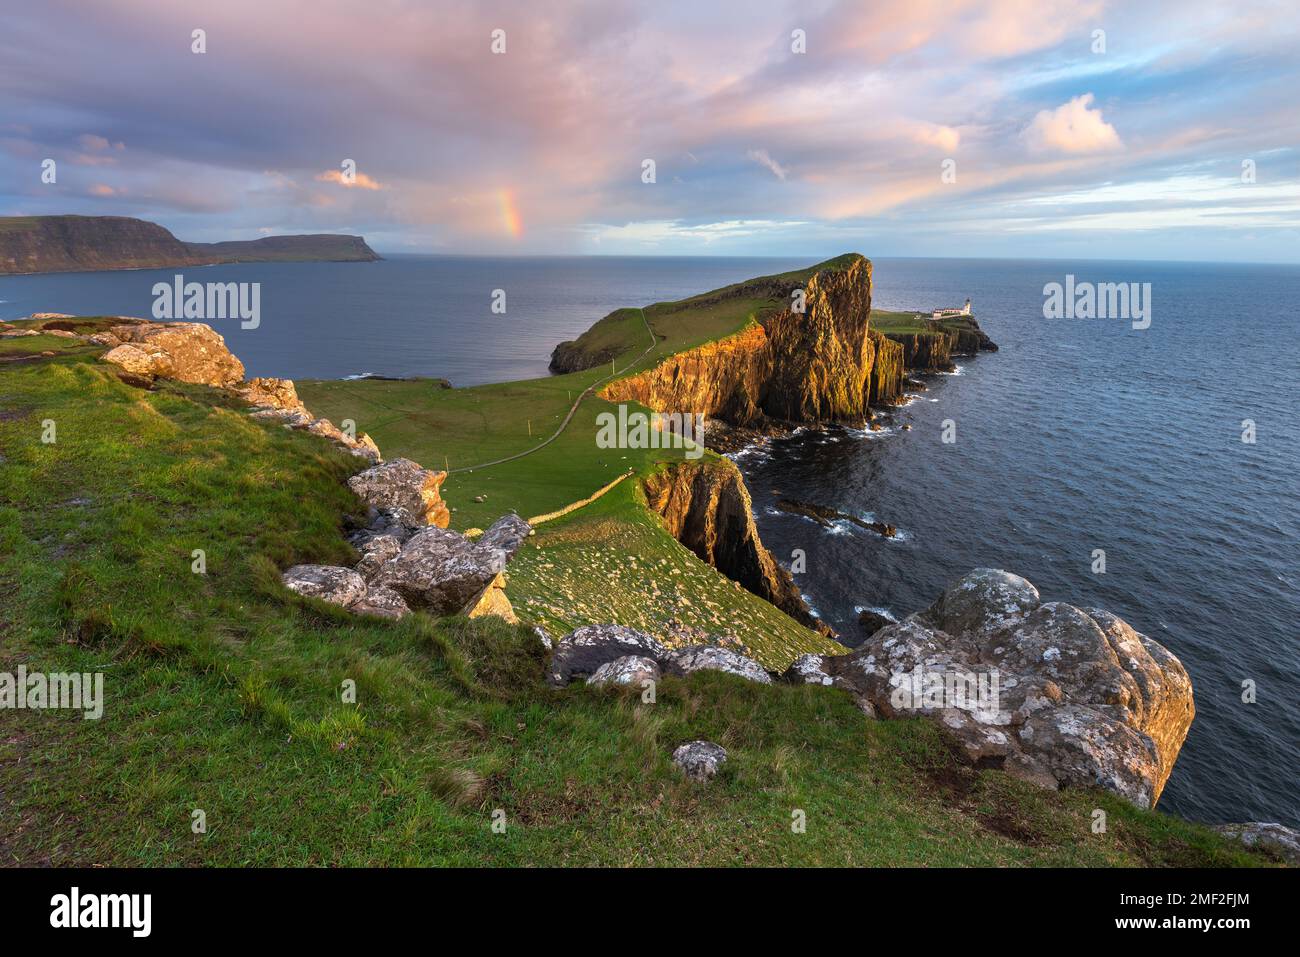 Vue imprenable sur le phare de Neist point avec arc-en-ciel sur la côte. Île de Skye, Écosse, Royaume-Uni. Banque D'Images